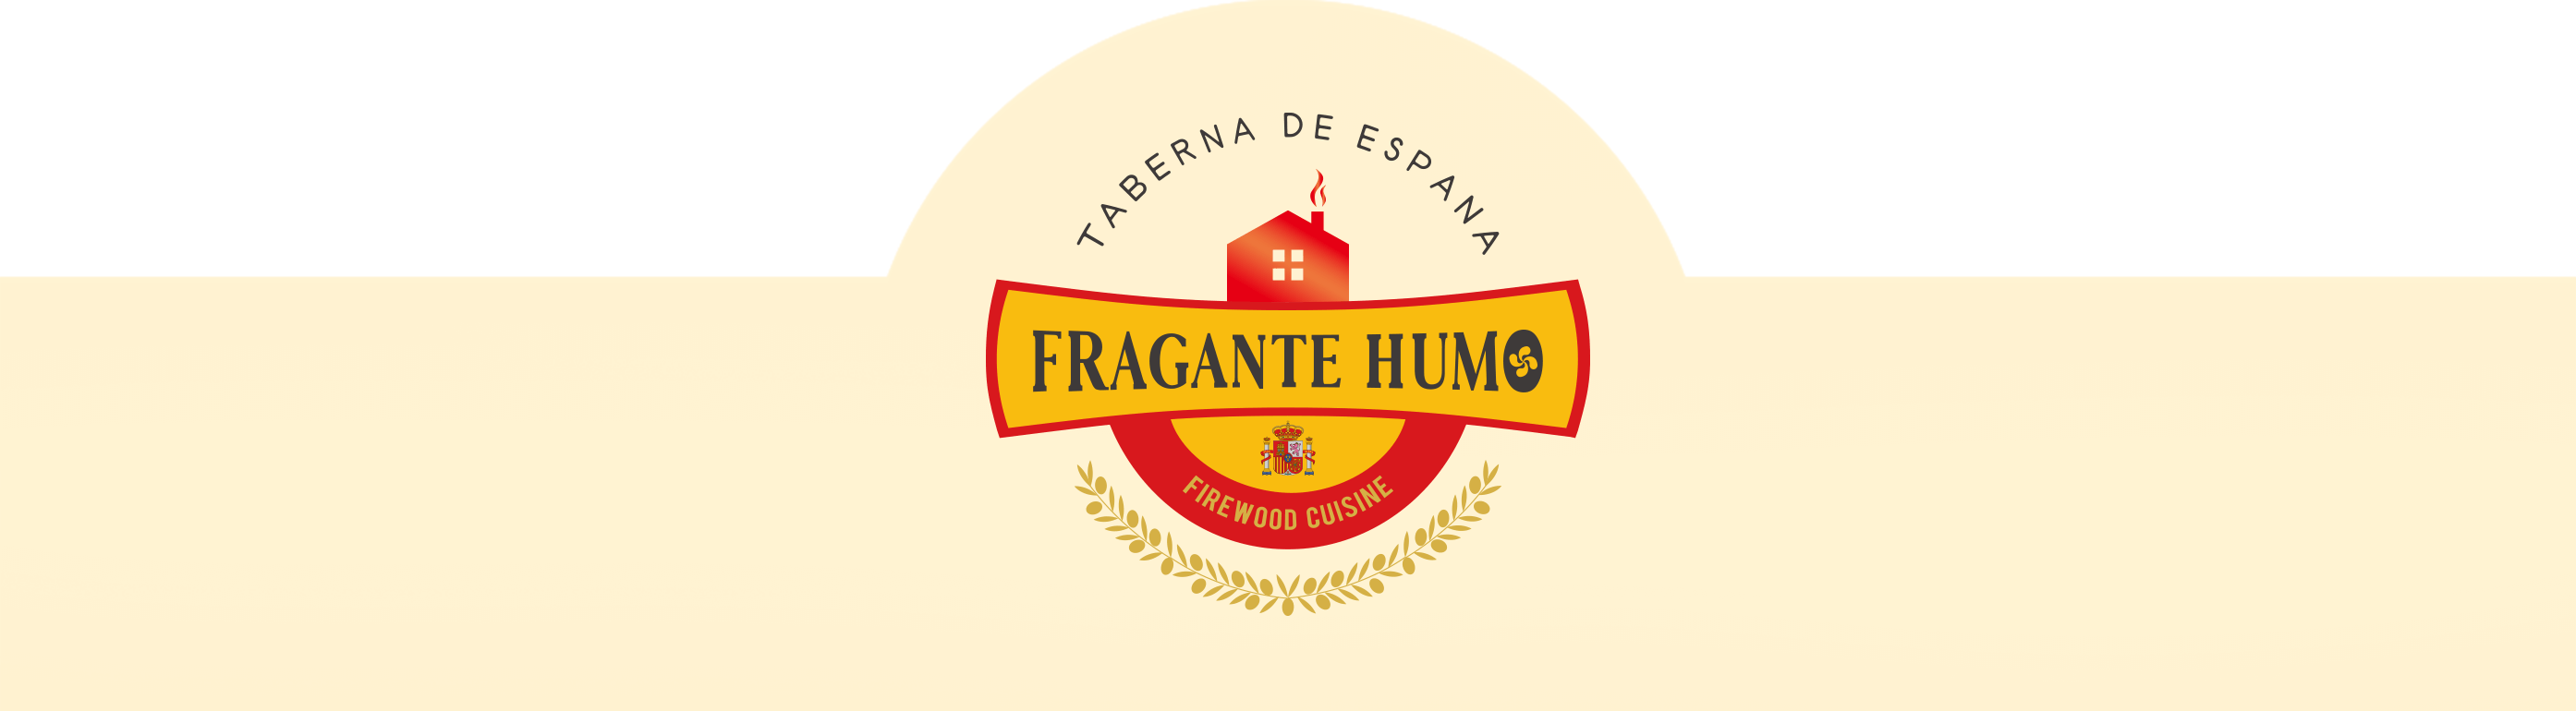 FRAGANTE HUMO_logo